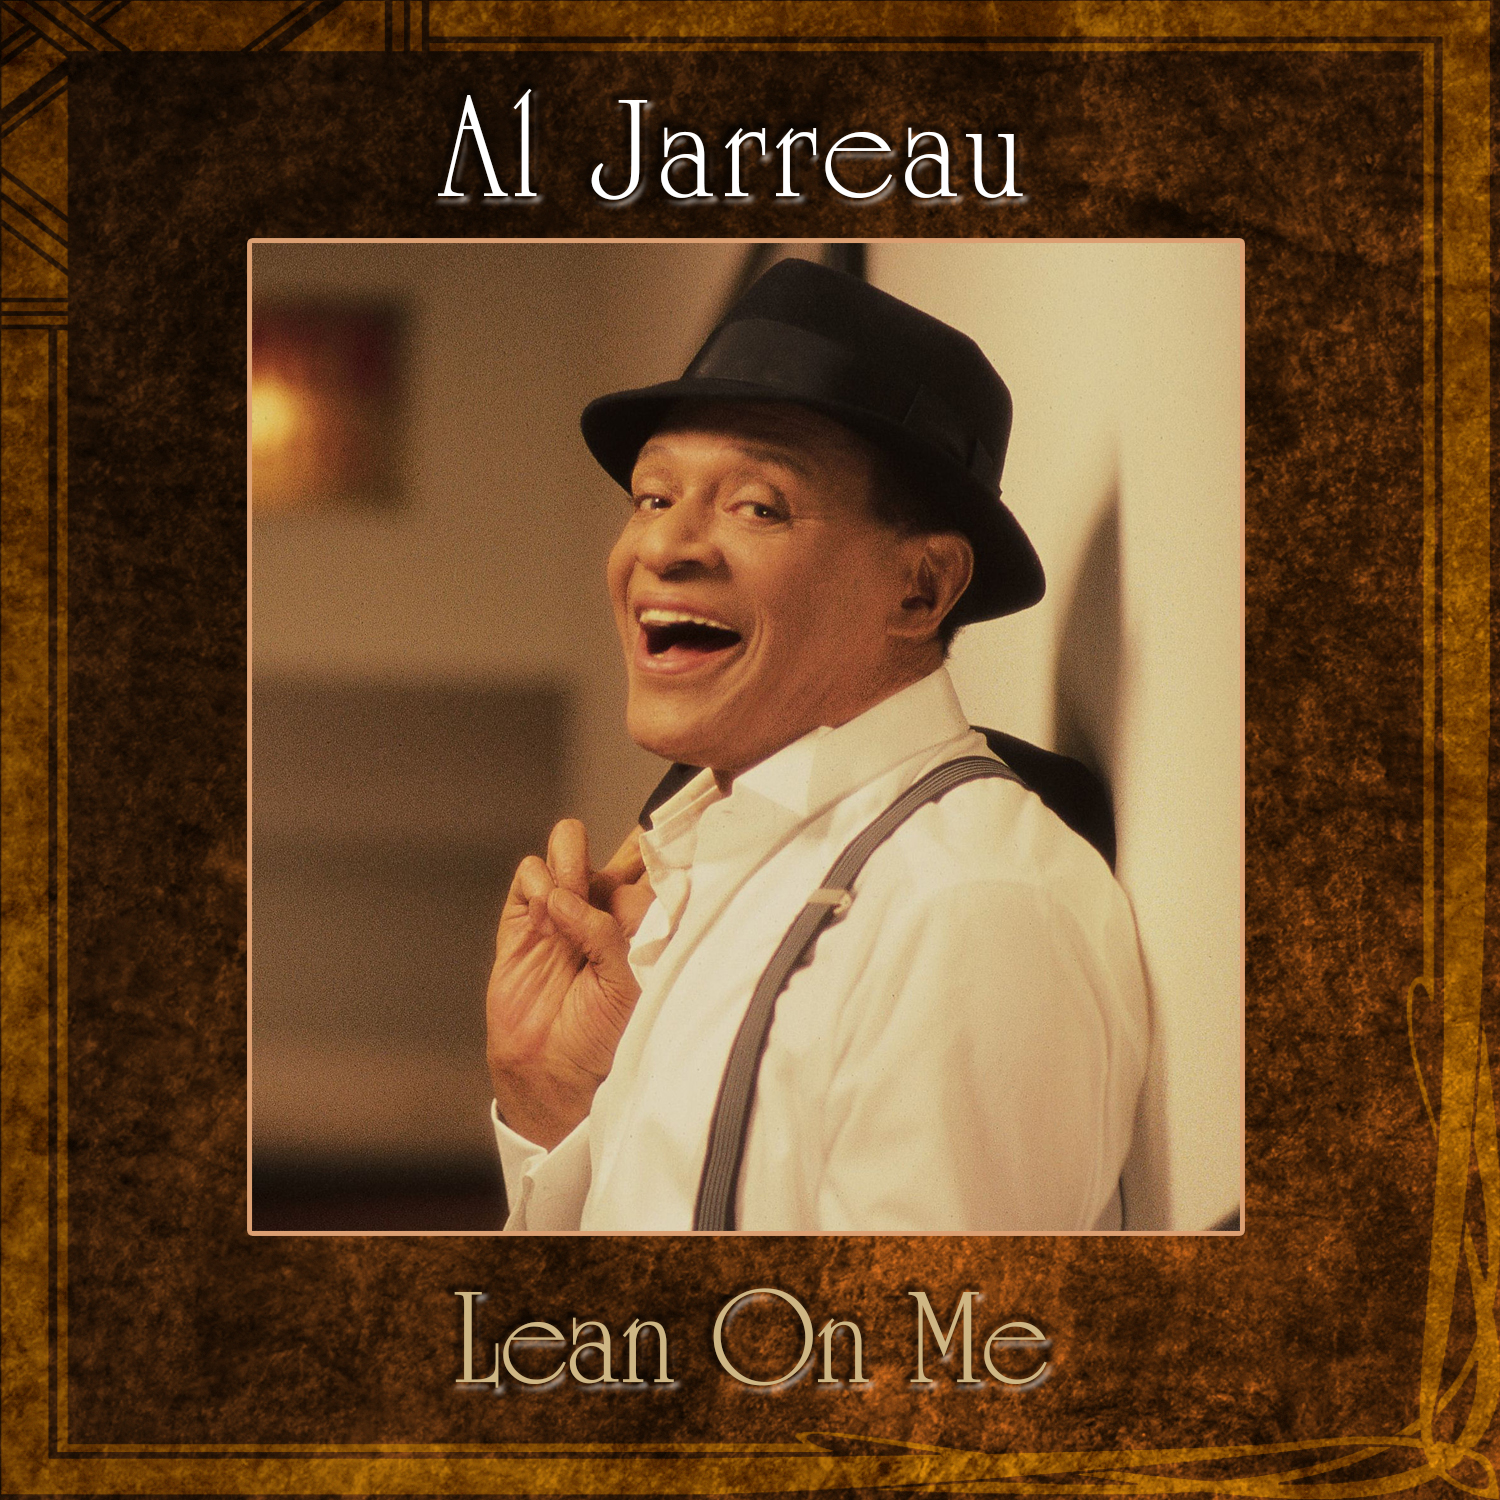 Lean On Me by Al Jarreau